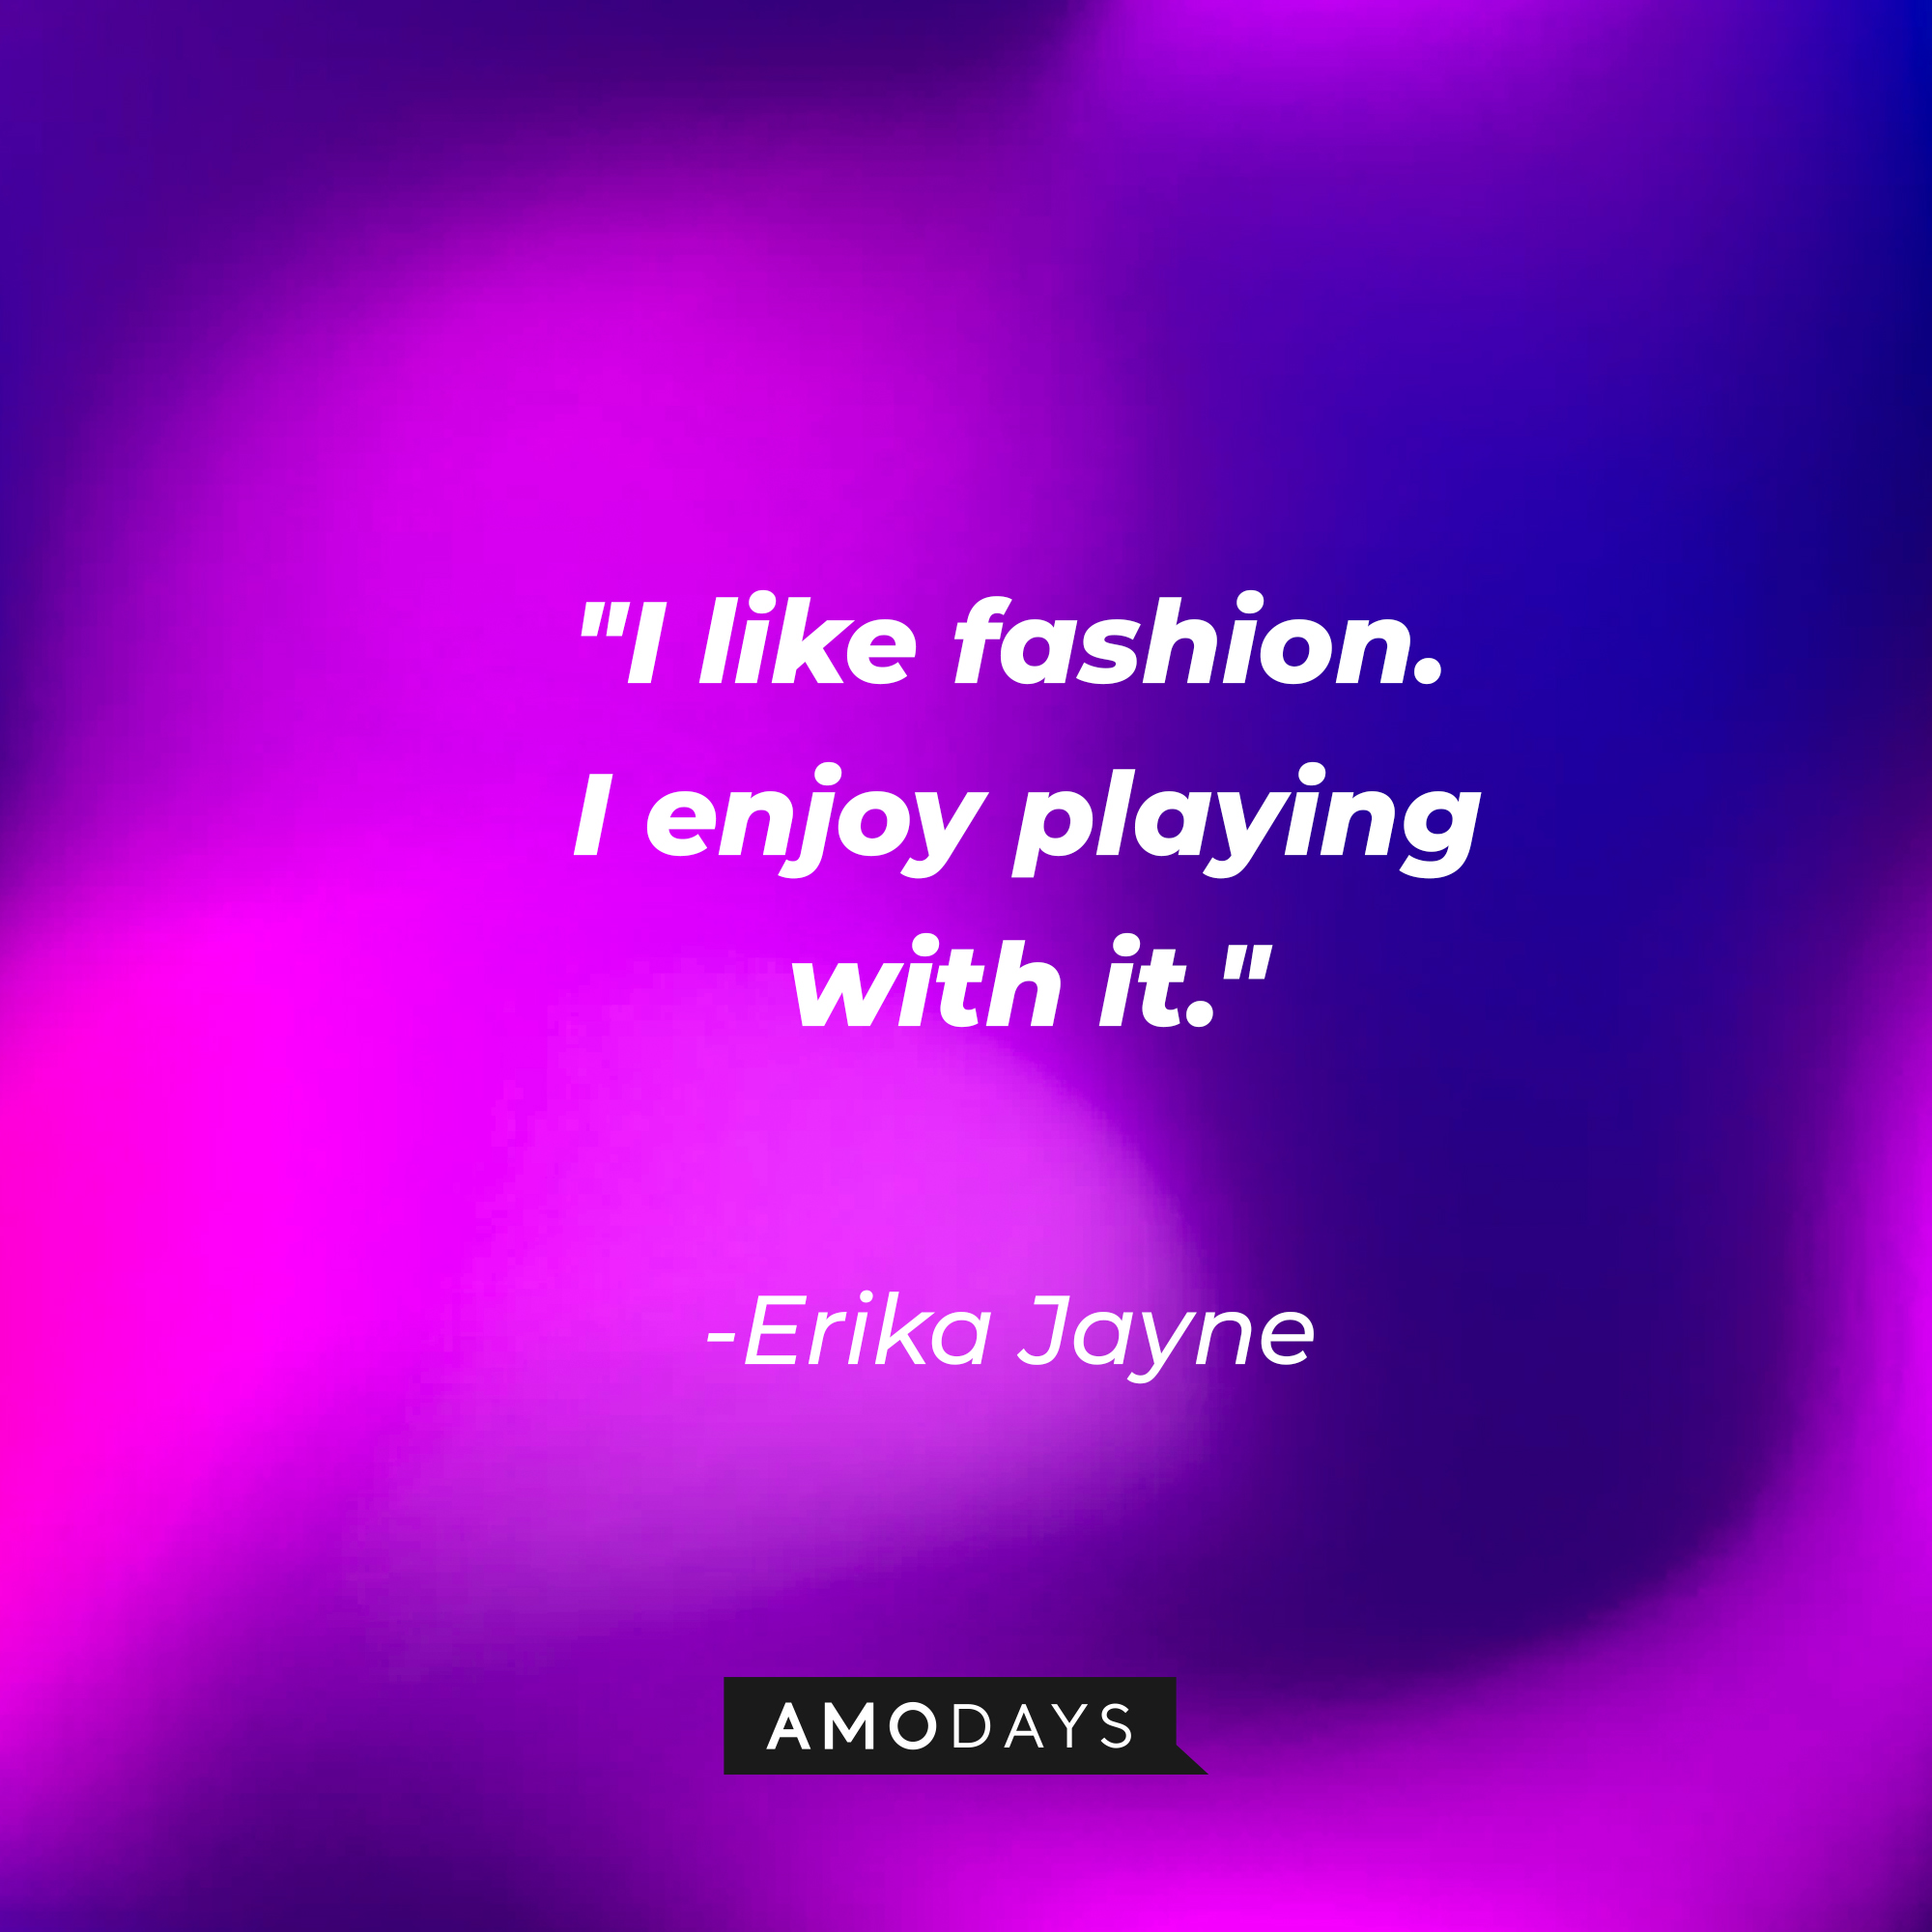 Erika Jayne’s quote: "I like fashion. I enjoy playing with it." | Image: Amodays